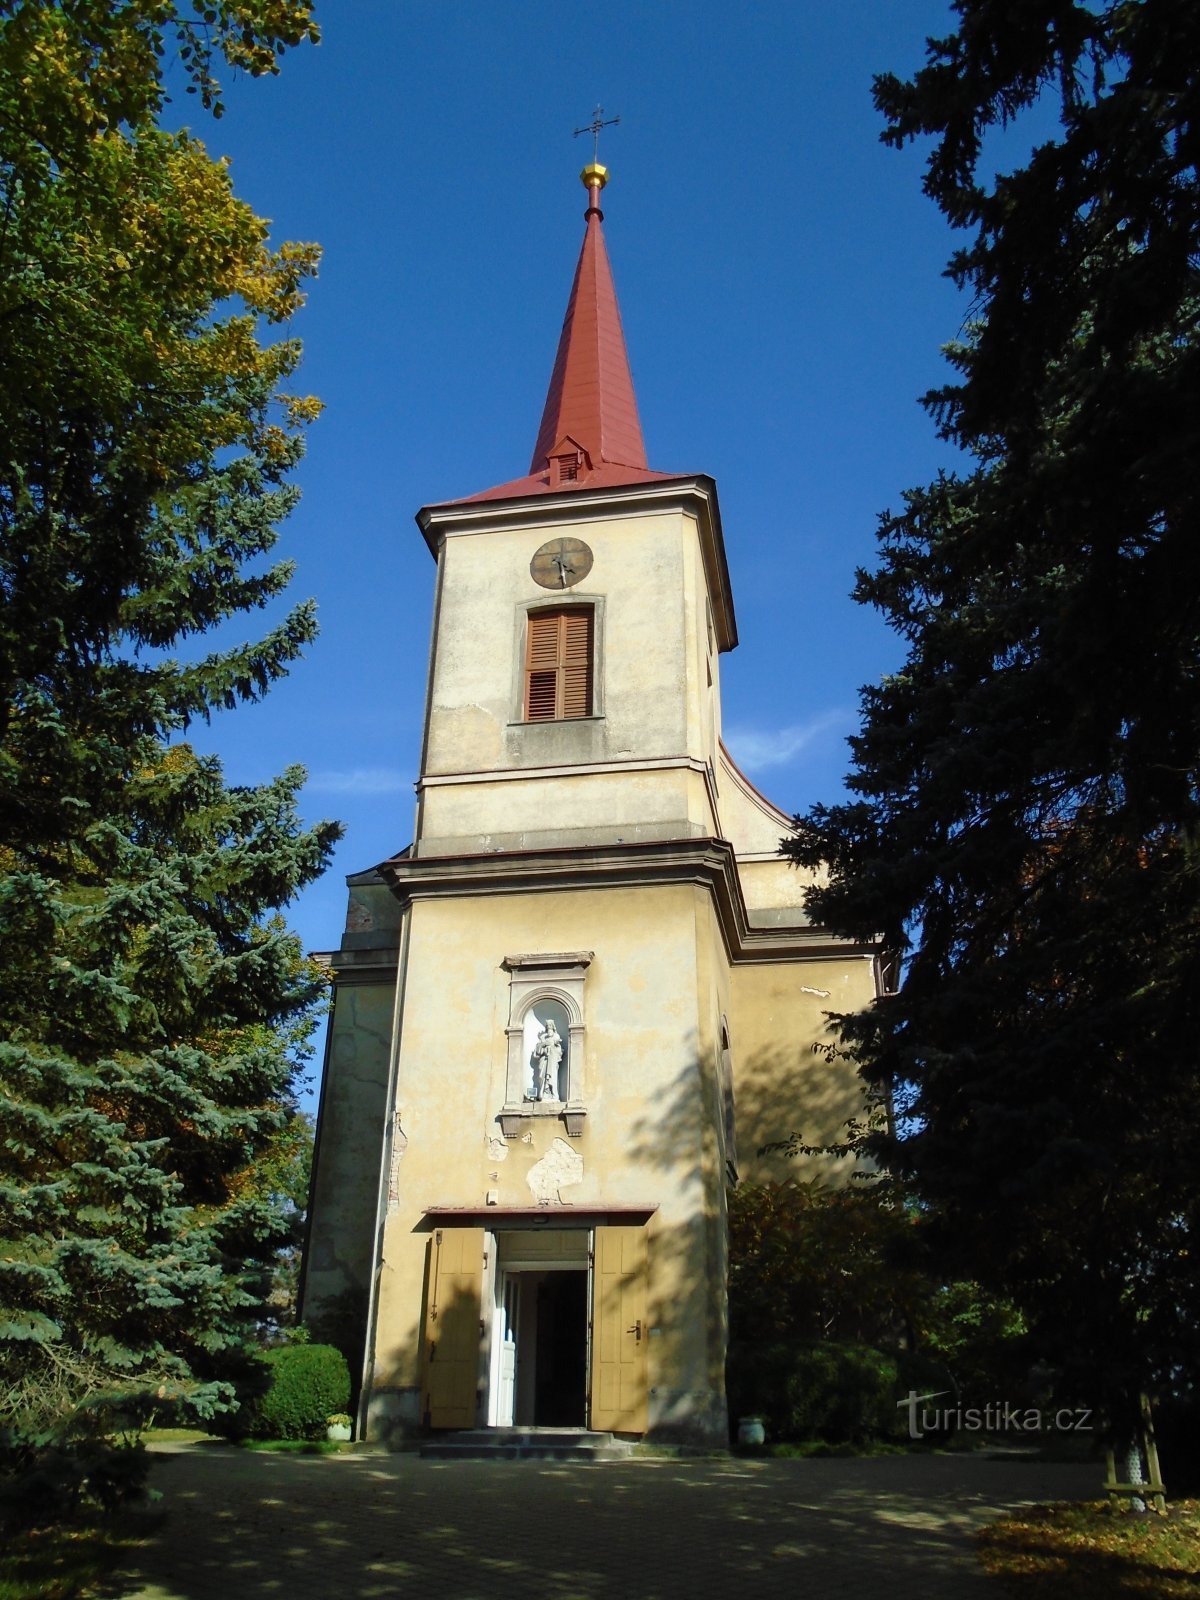 Crkva Nalaska sv. Stjepan (Černilov)